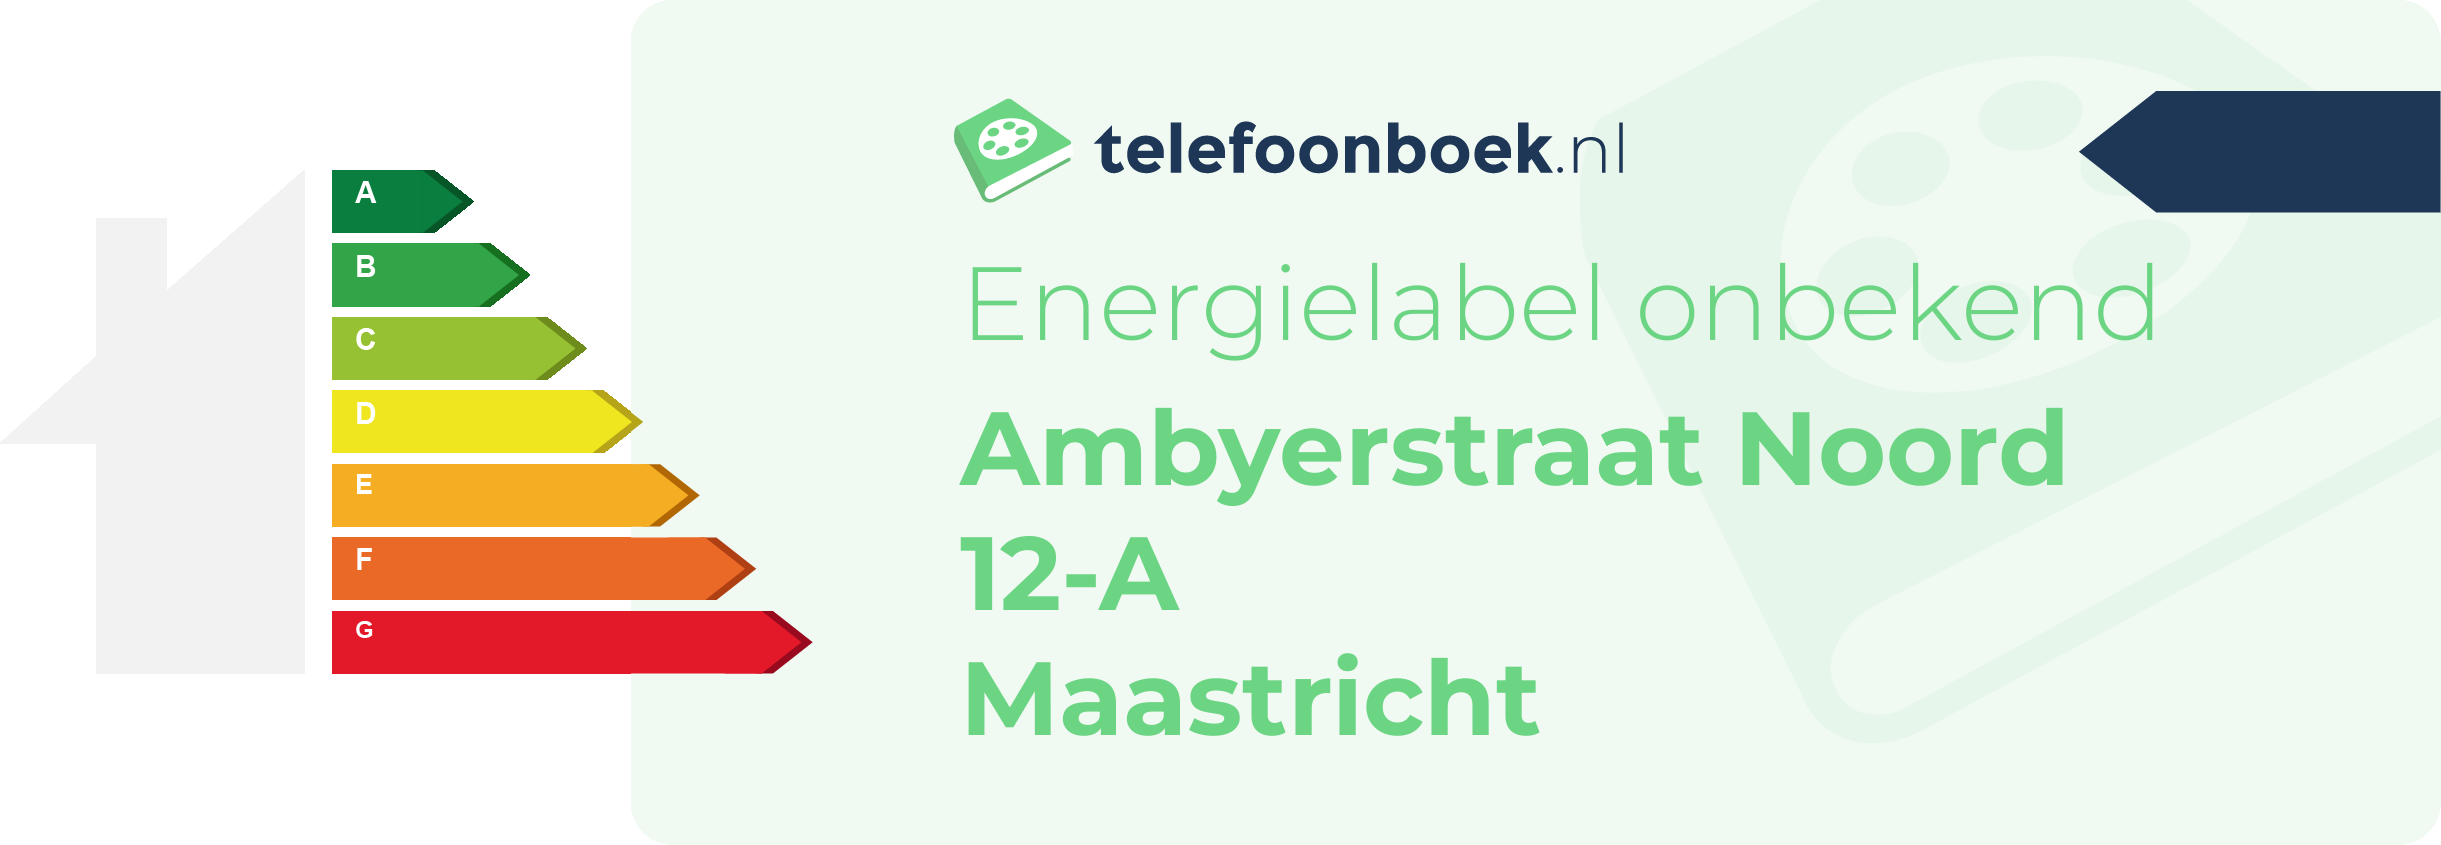 Energielabel Ambyerstraat Noord 12-A Maastricht